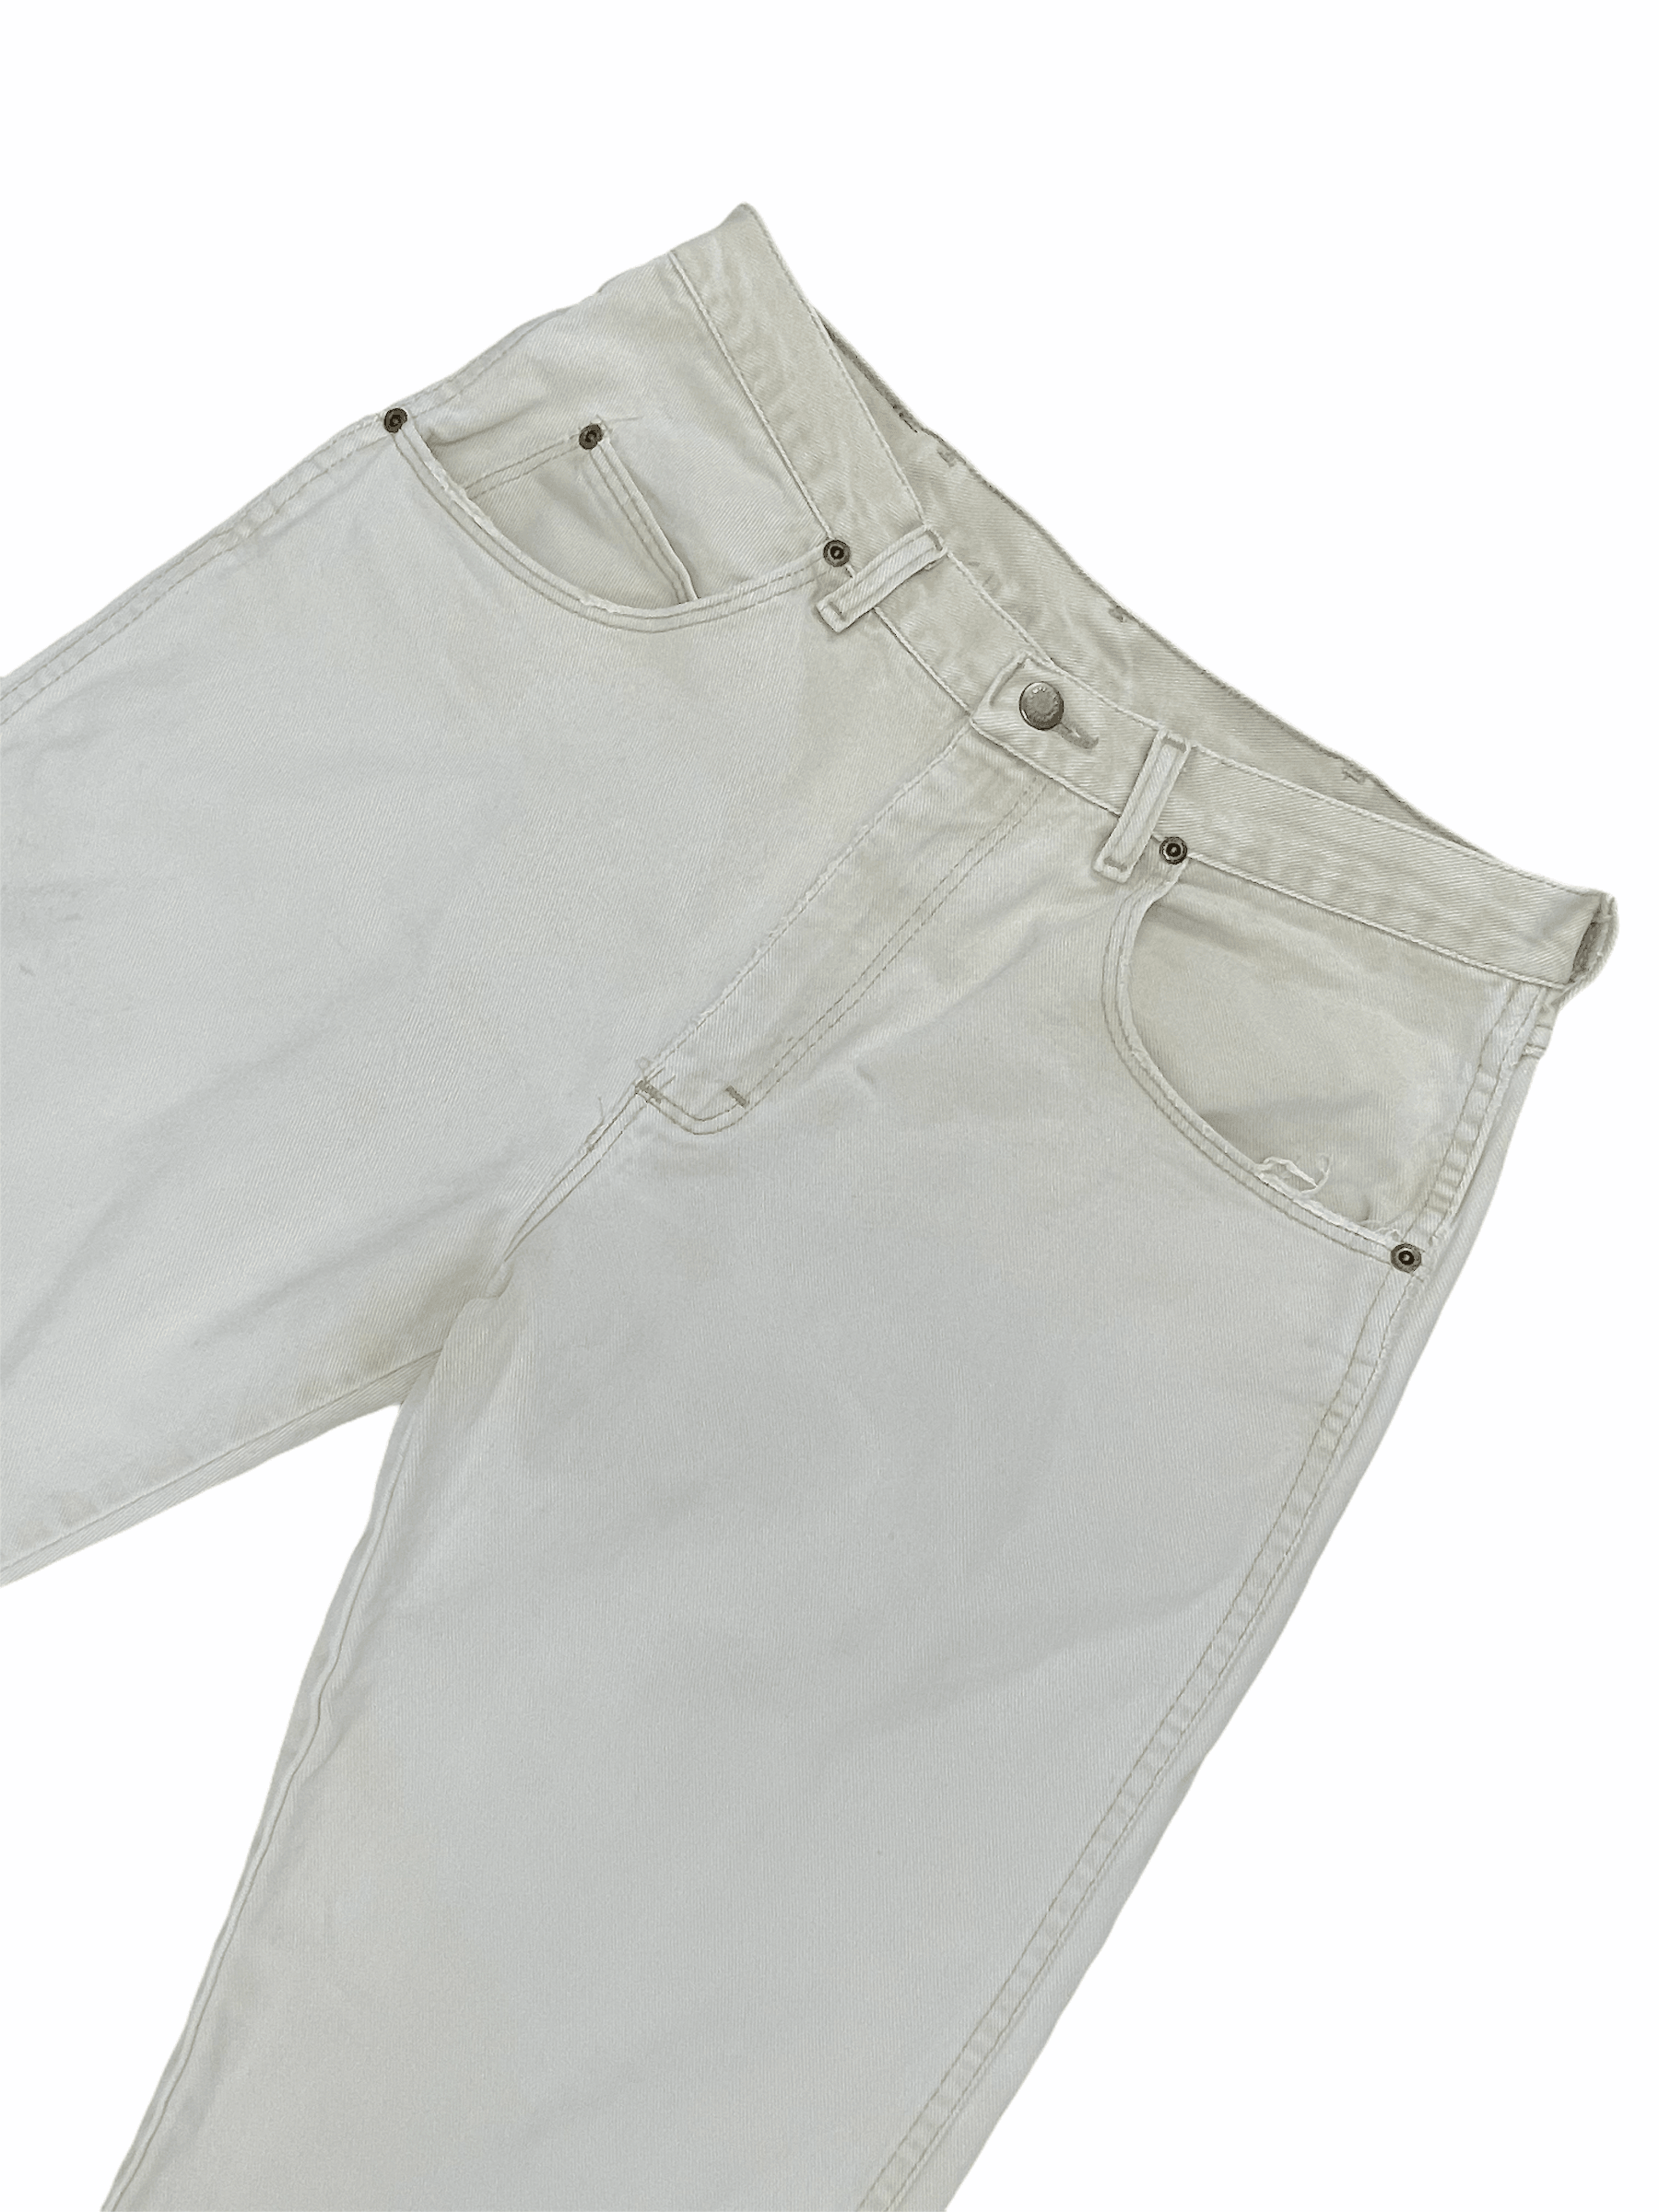 Wrangler Vintage Off White Cream Distressed Denim Jeans 32W 30L Medium - M - Genuine Design Luxury Consignment